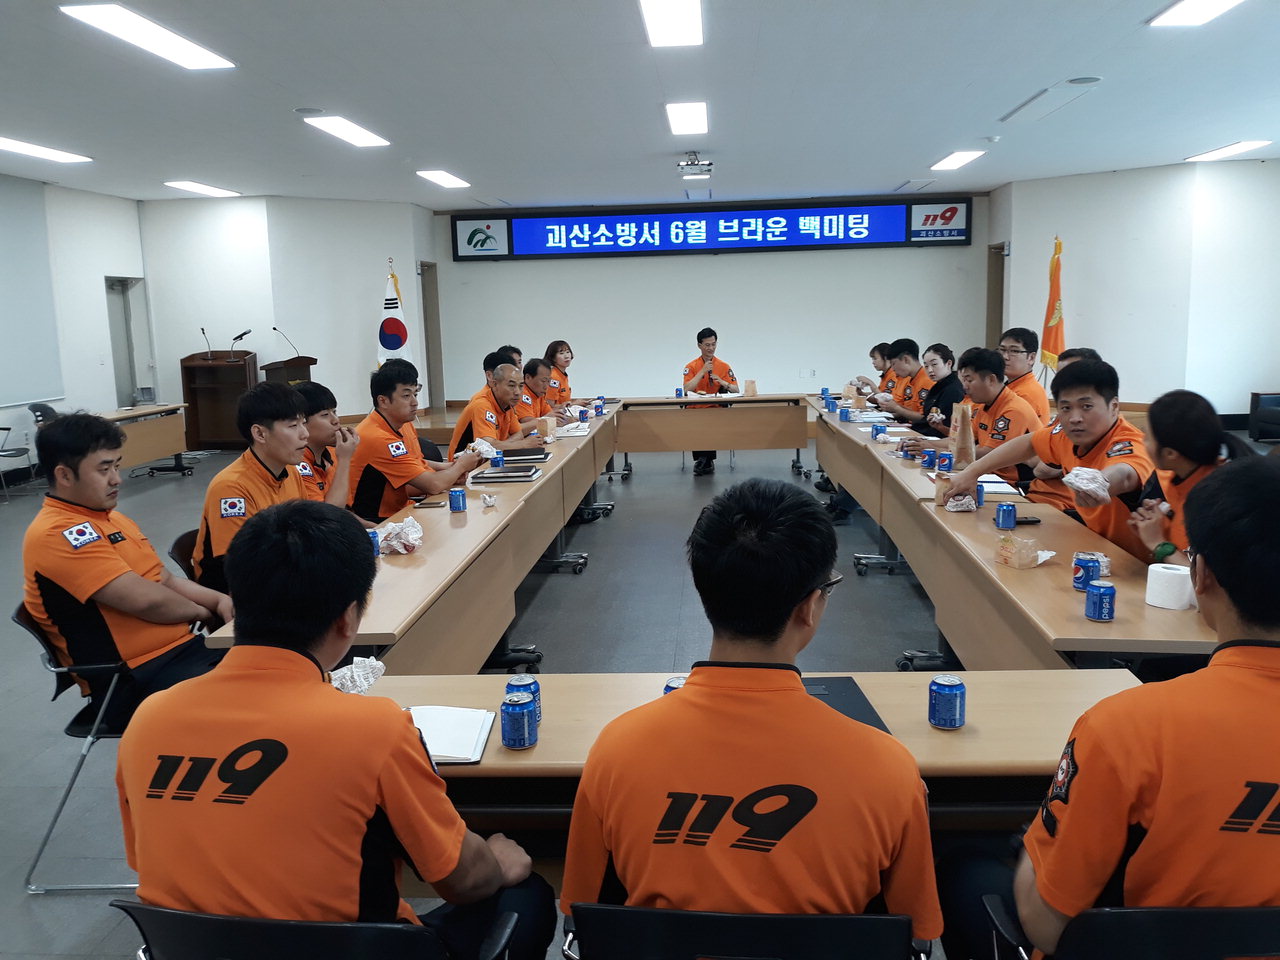 괴산소방서(서장 김유종)는 직원들의 자유로운 의사소통을 위한 '브라운백 미팅'을 실시했다고 29일 밝혔다. /괴산소방서 제공